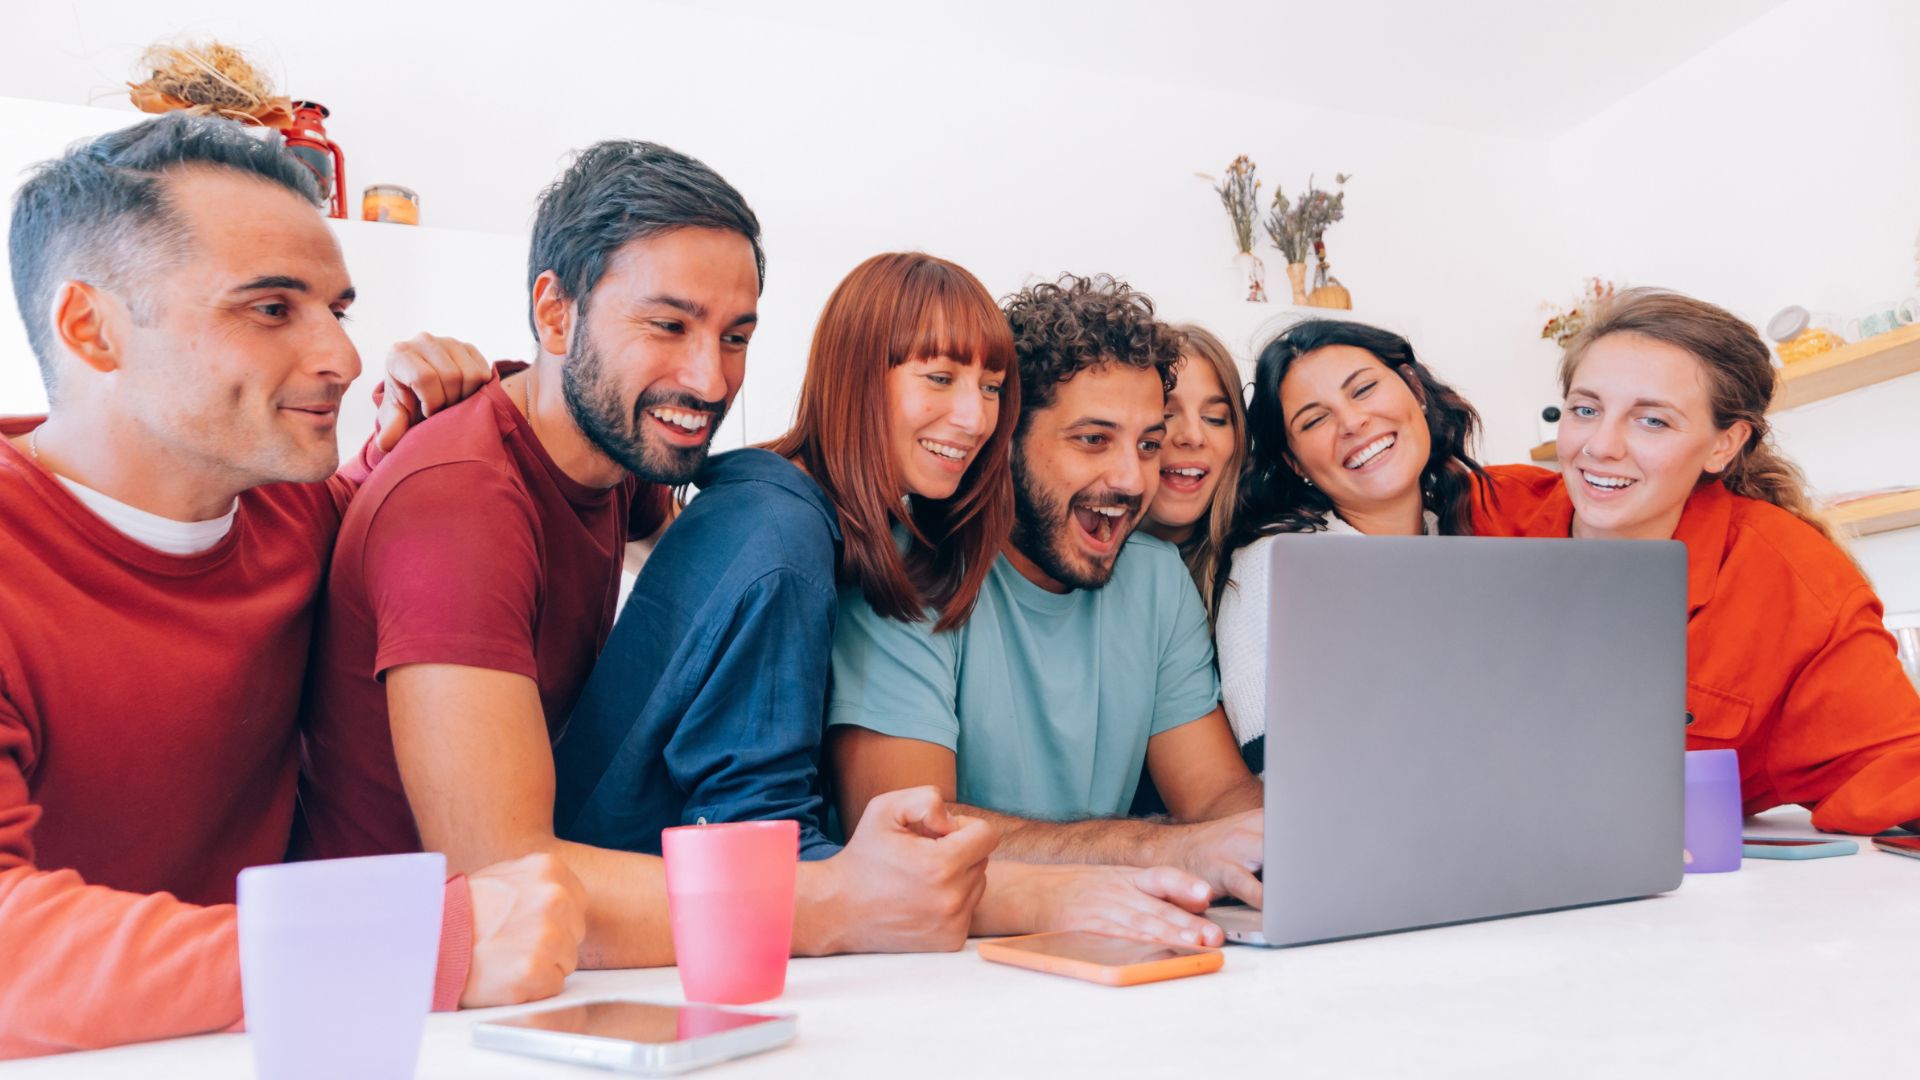 Groupe d'amis riant devant ordinateur.